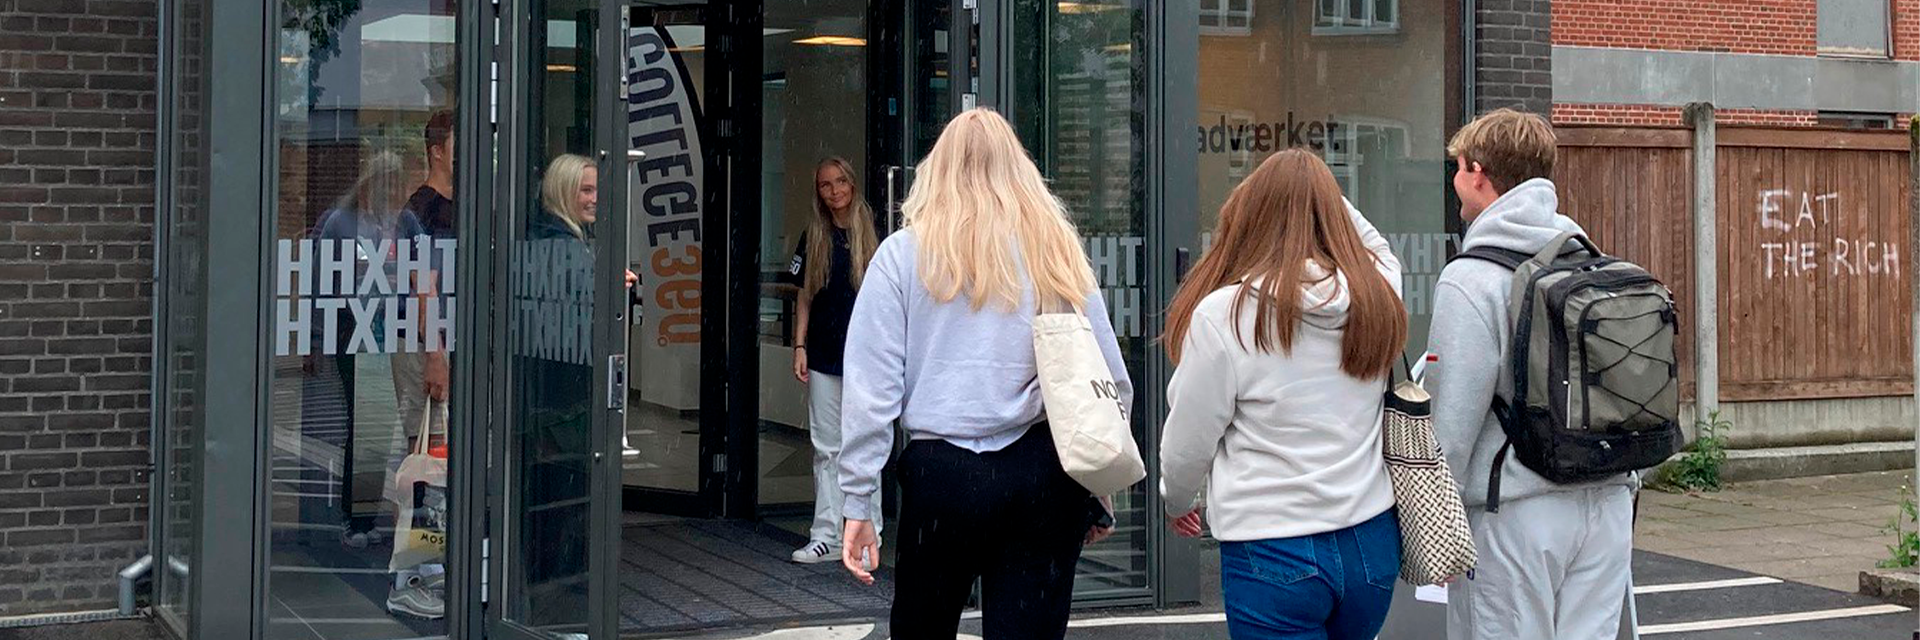 hhx elever går ind ad hovedindgangen til Handelsgymnasiet Silkeborg